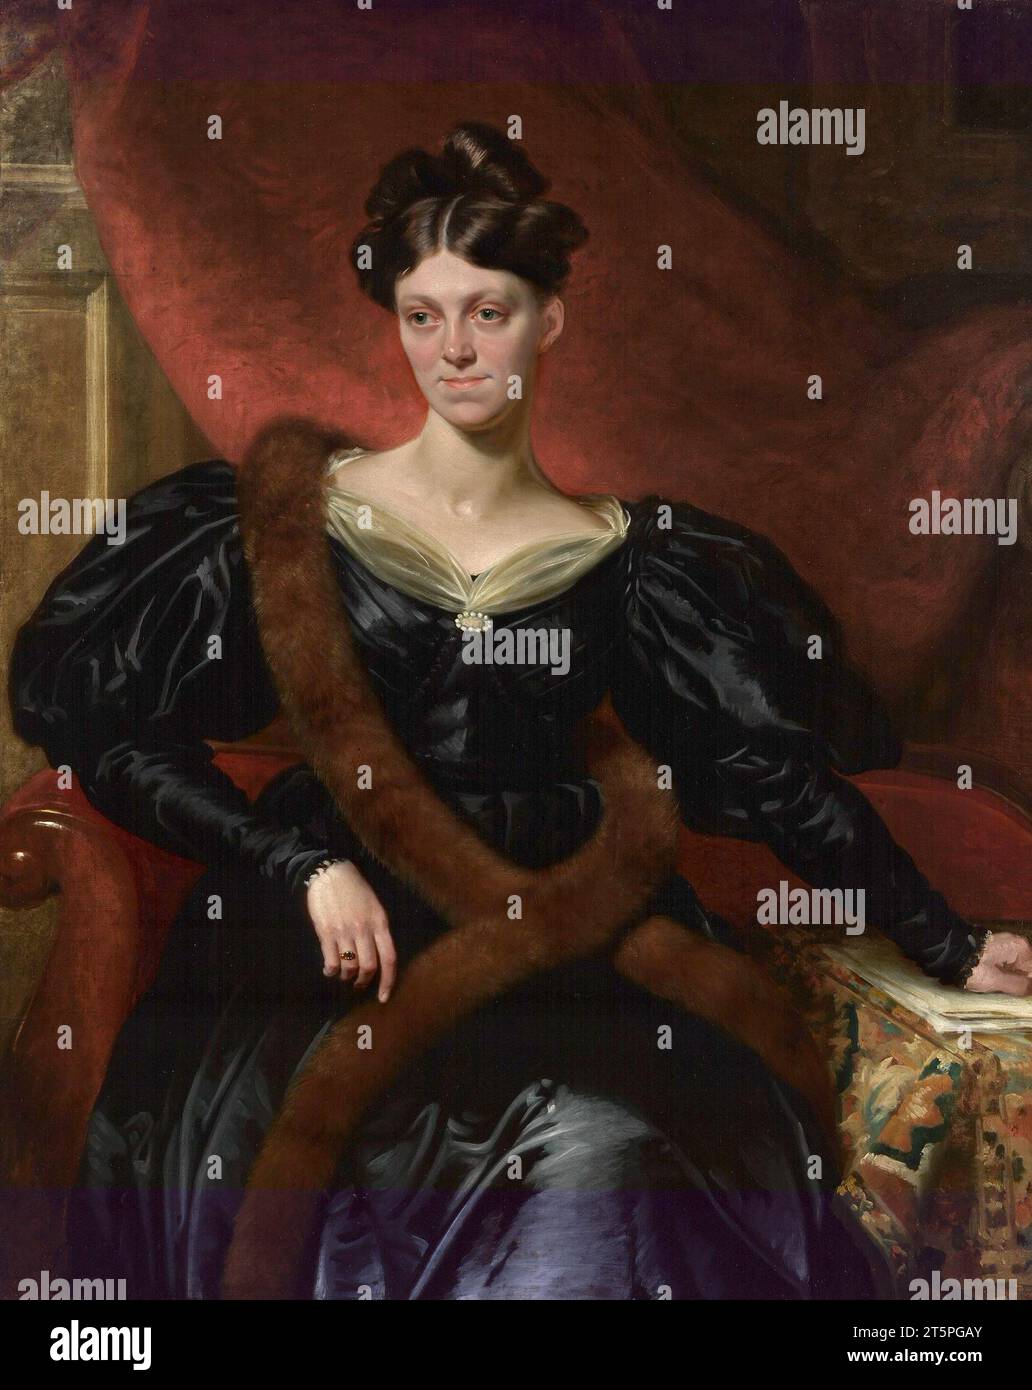 Harriet Martineau. Ritratto della teorica sociale inglese, Harriet Martineau (1802-1876) di Richard Evans, olio su tela, c. 1834 Foto Stock